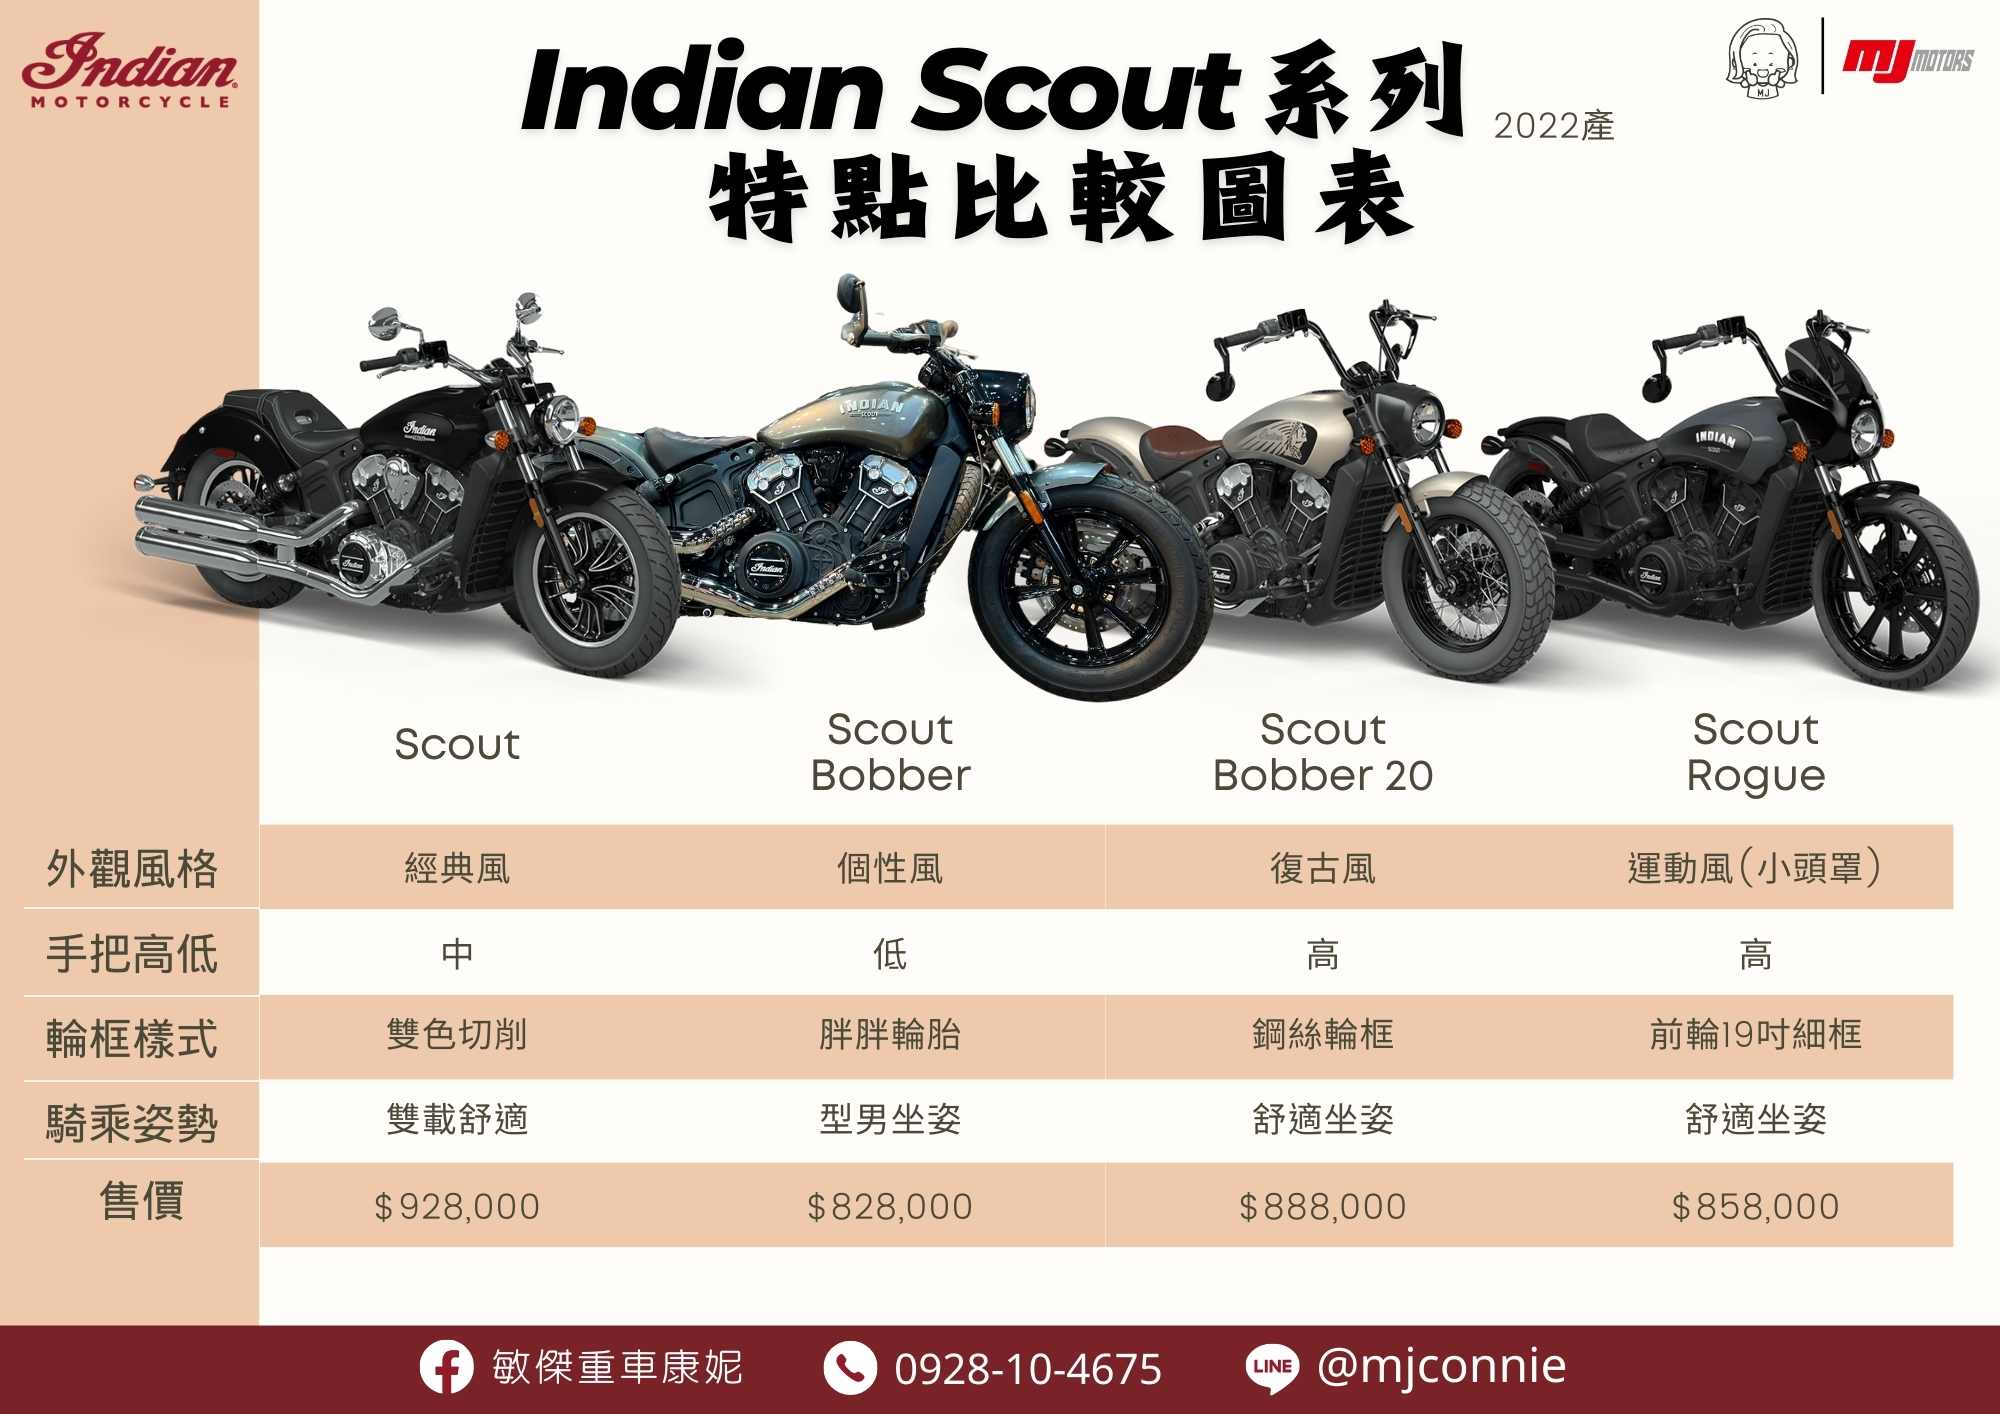 【敏傑車業資深銷售專員 康妮 Connie】INDIAN MOTORCYC Scout - 「Webike-摩托車市」 『敏傑康妮』Indian 印地安 Scout 車系 現在最後2022 車輛 有超優惠方案 可依照您的喜好 選擇不同車型